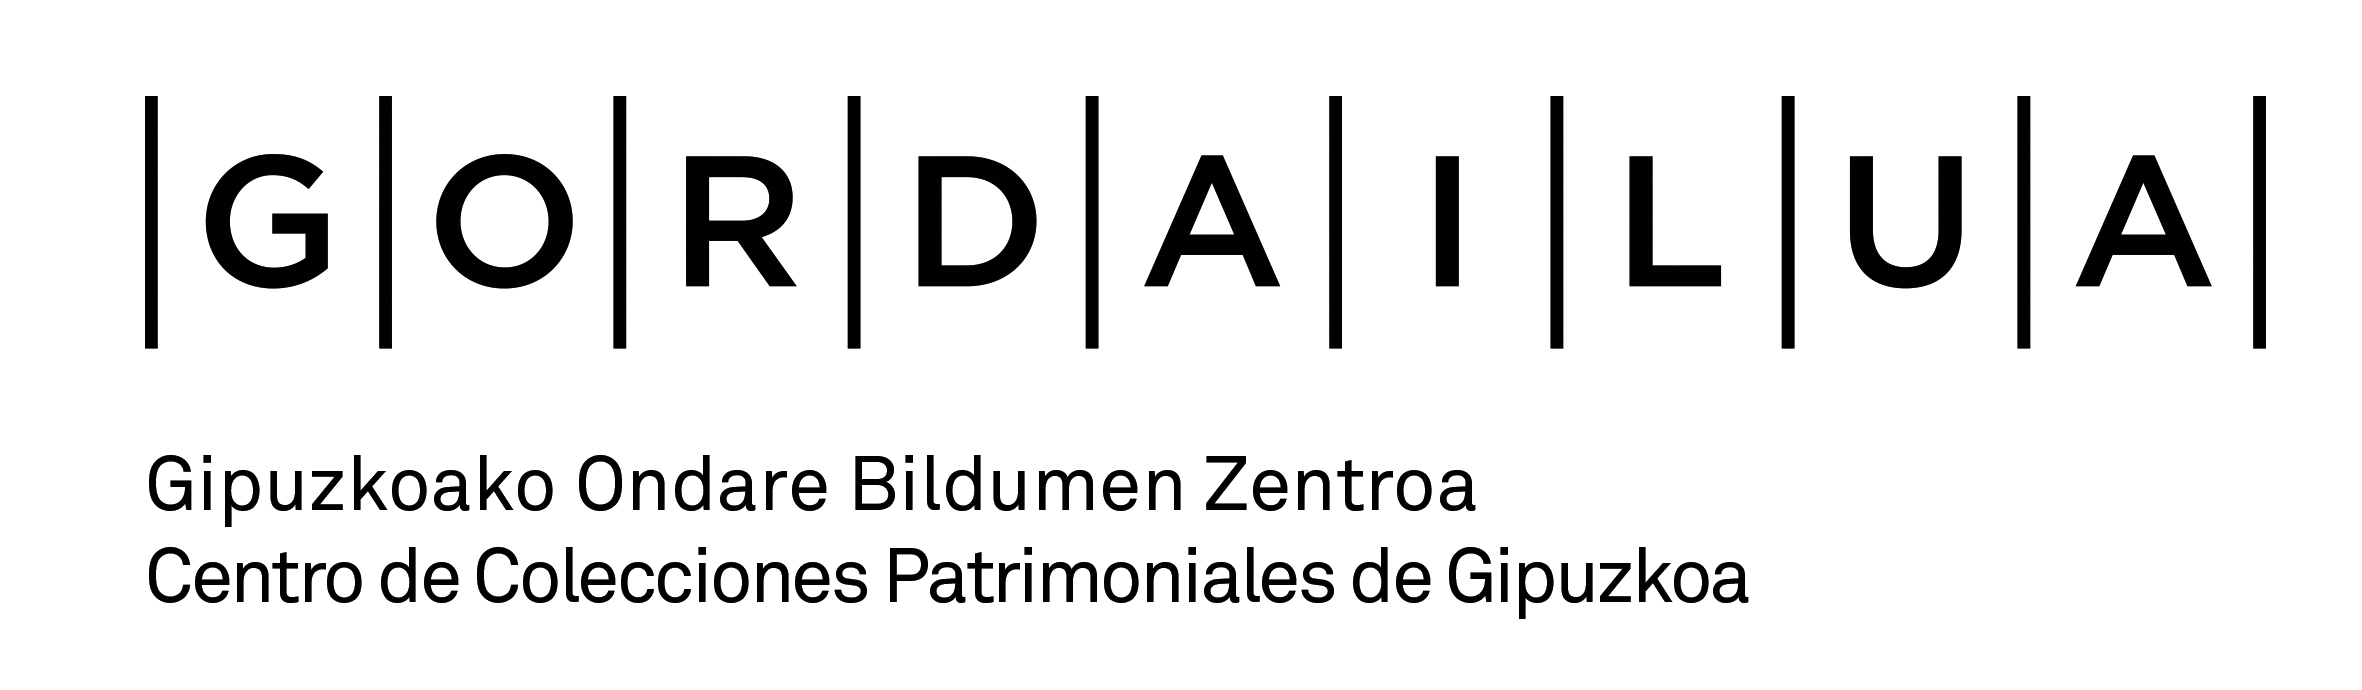 Gordailua-Logo